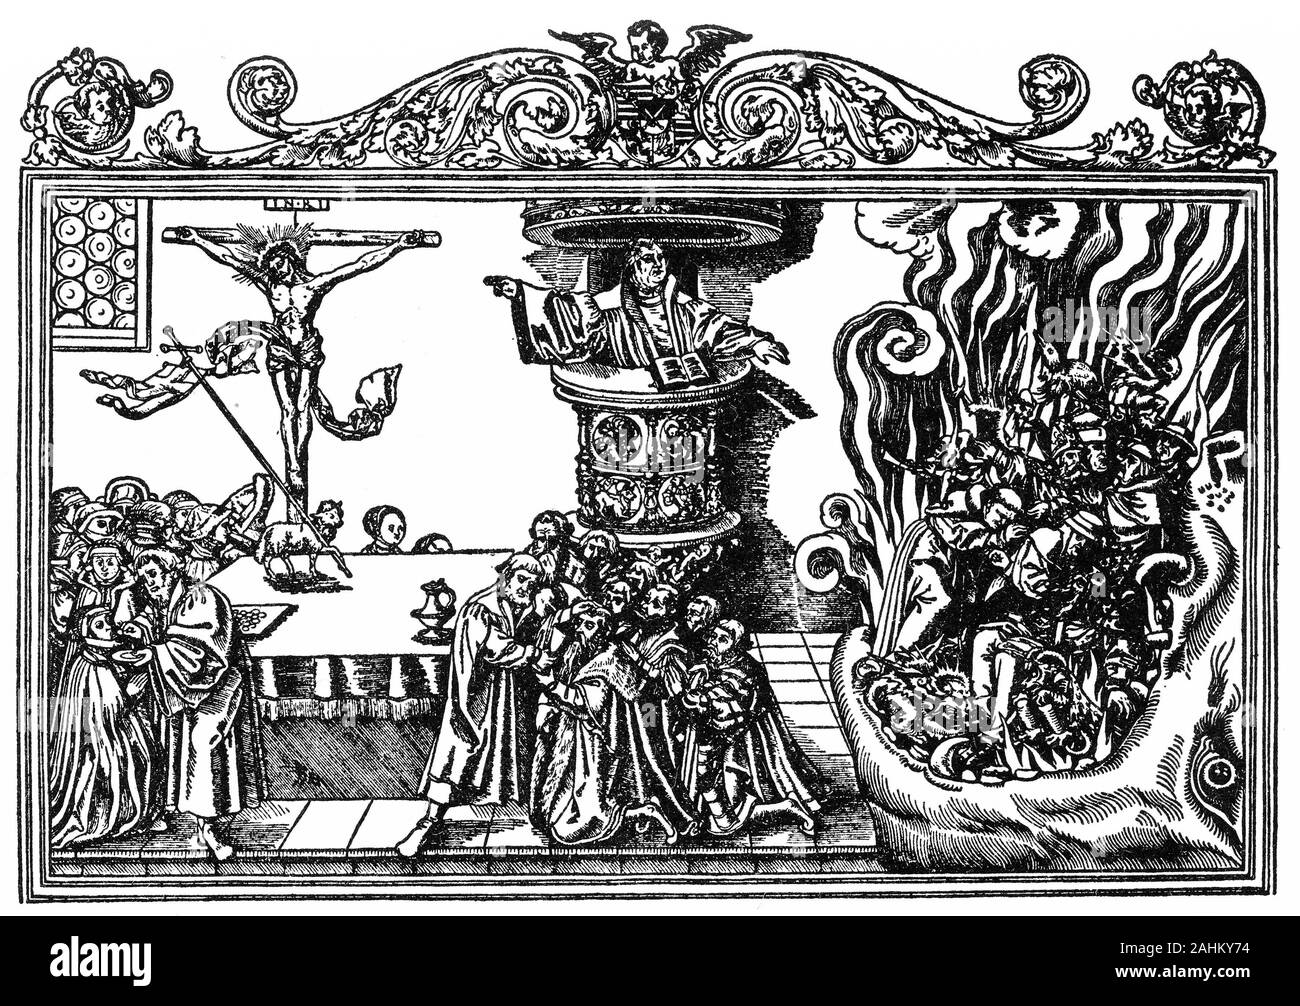 Incisione di Martin Lutero condividere il pane e il vino con i laici (sulla sinistra) mentre il Papa e il clero cattolico romano sono inghiottiti da una bestia che rappresenta l'inferno. Foto Stock